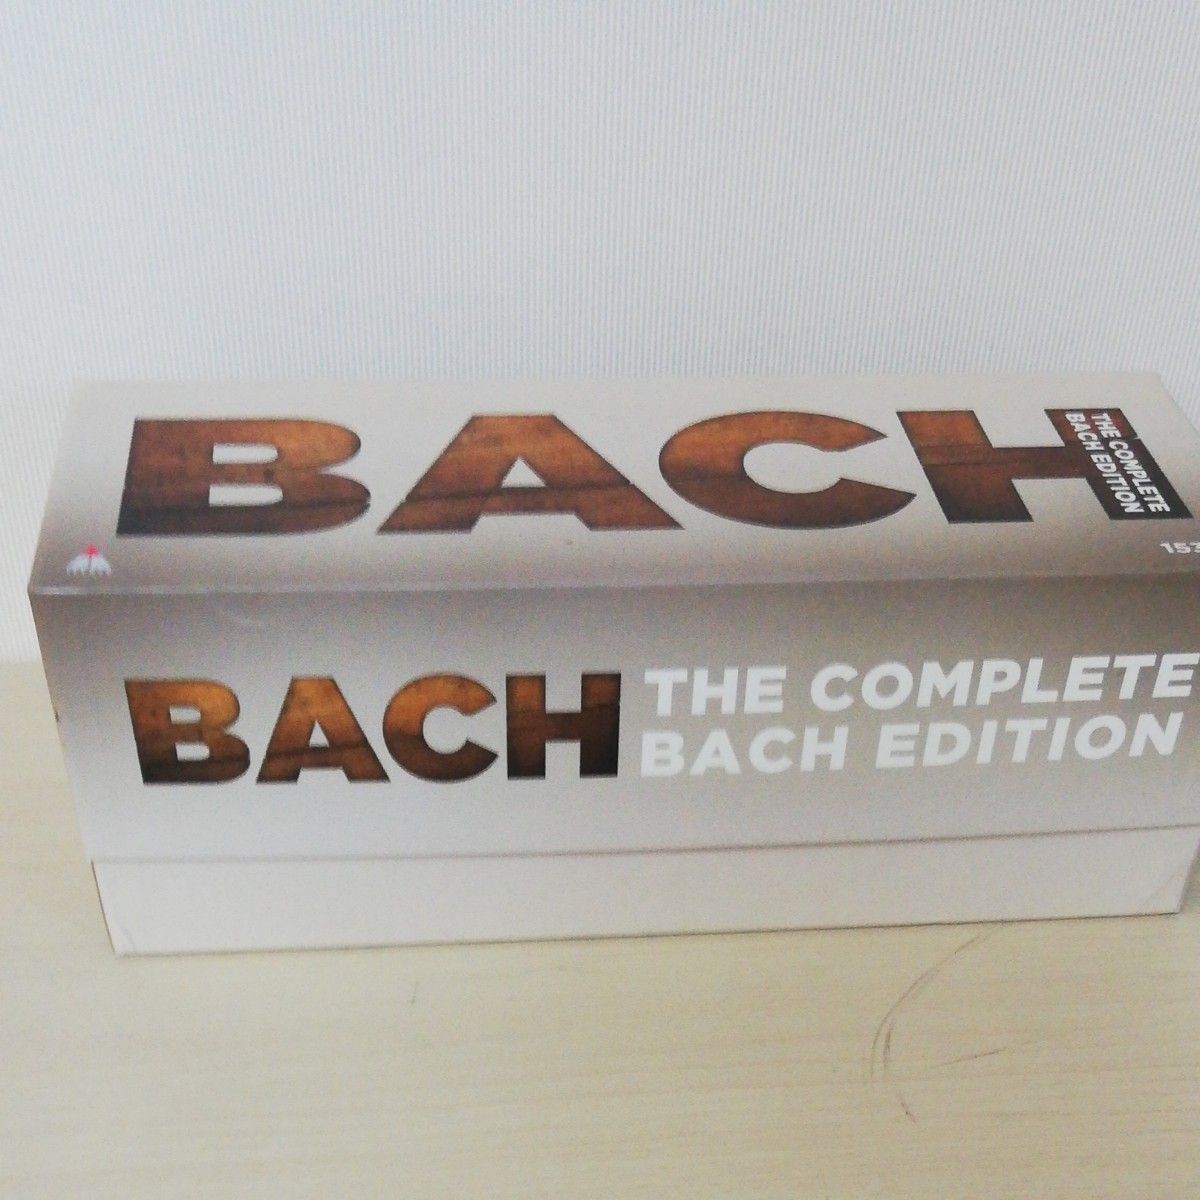 バッハ全集 The complete Bach edition